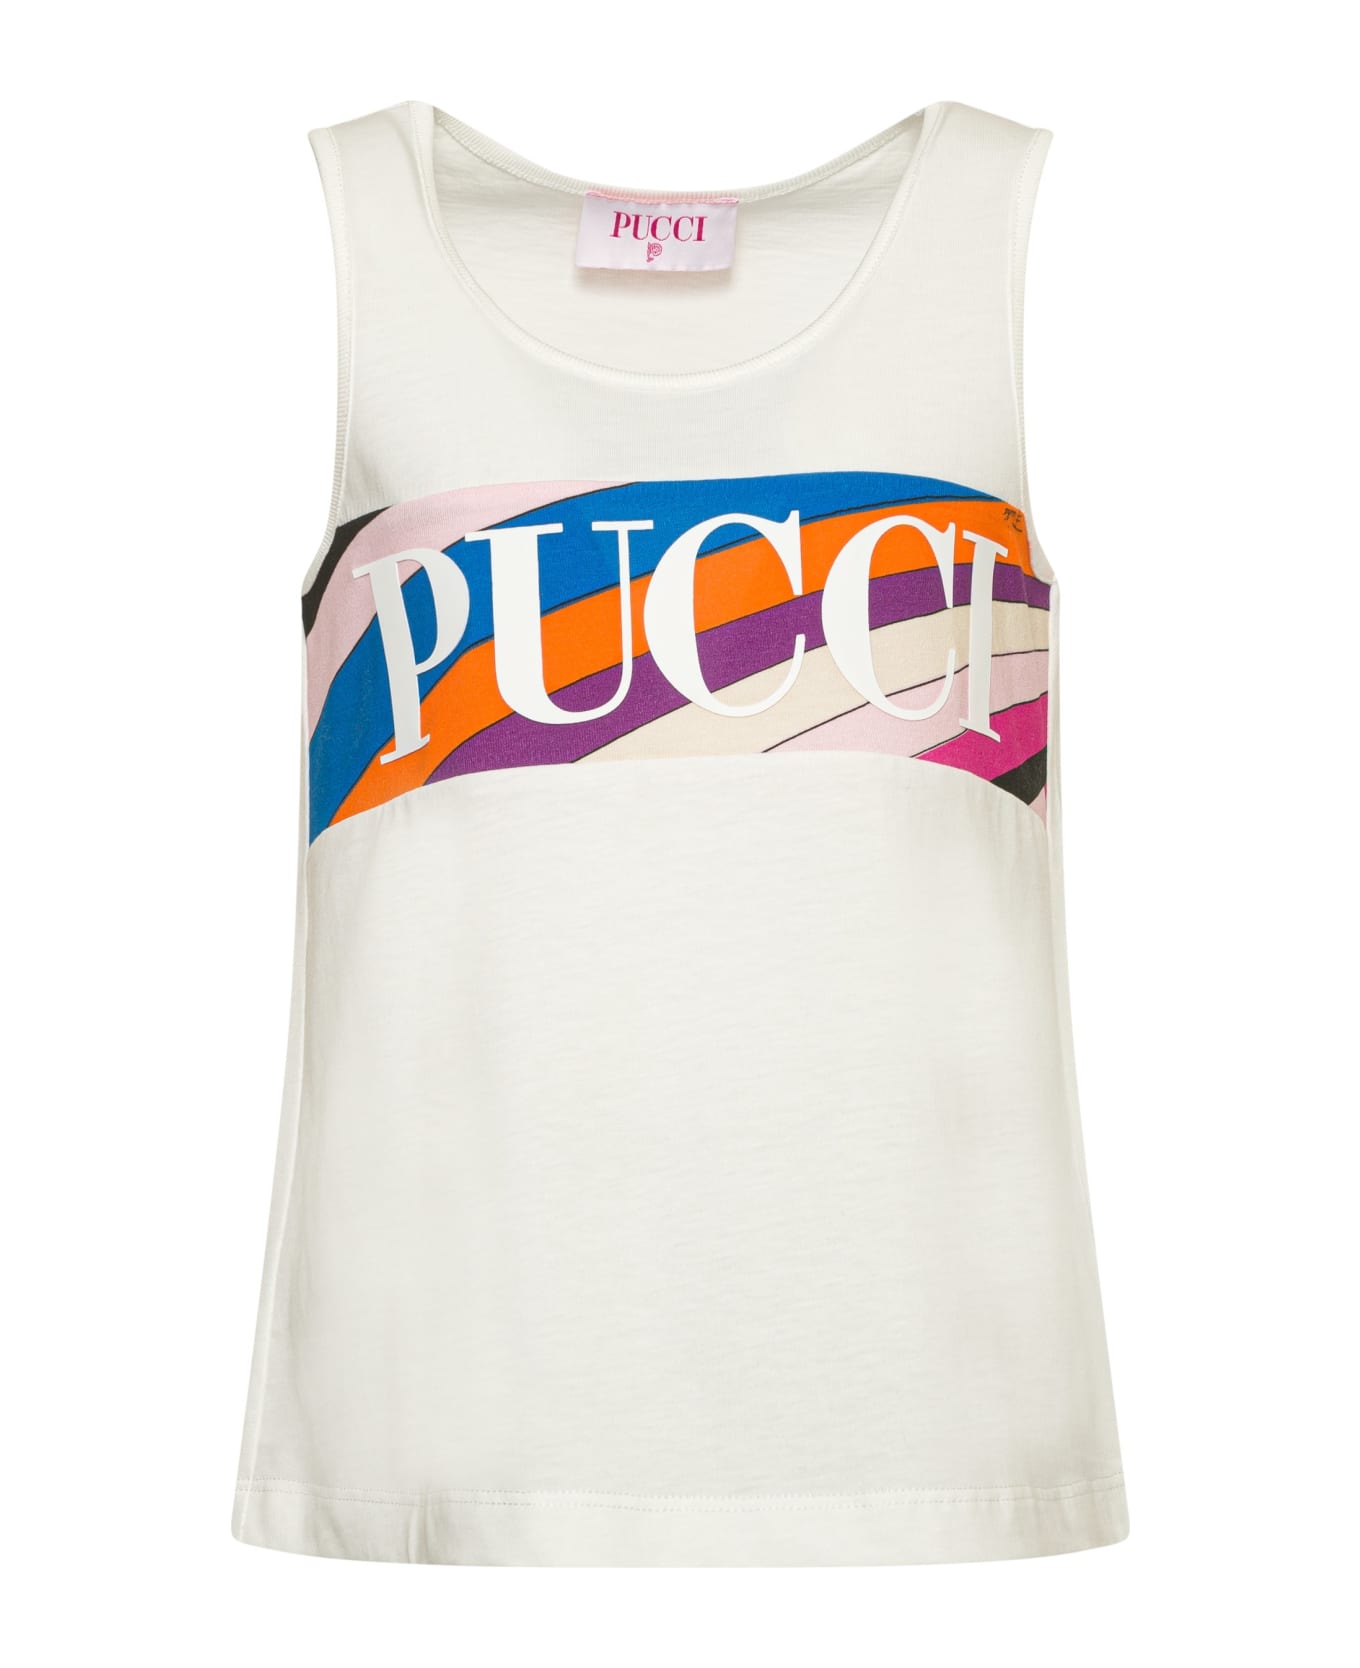 Pucci Canotta Con Logo - Cream トップス